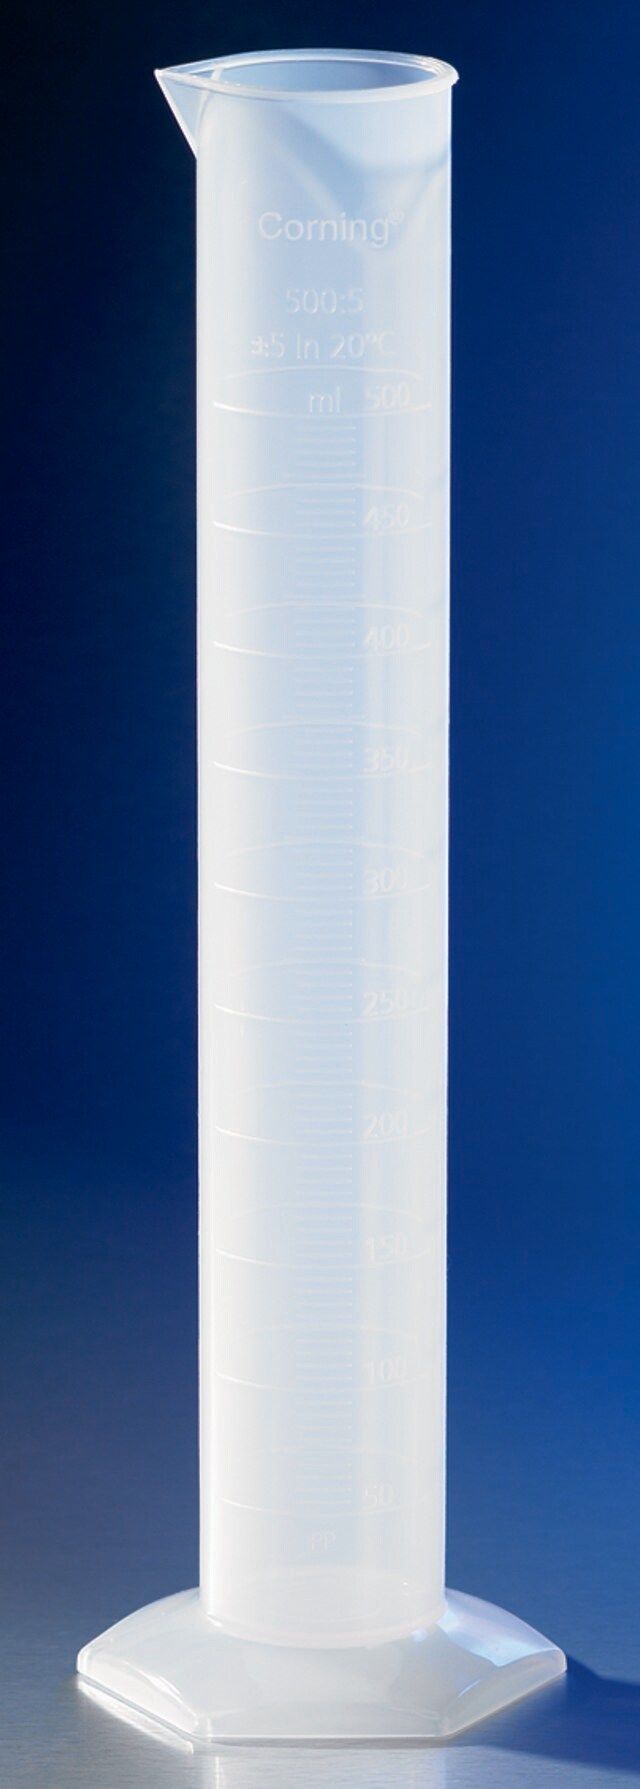 Corning<sup>®</sup> reusable graduated cylinder